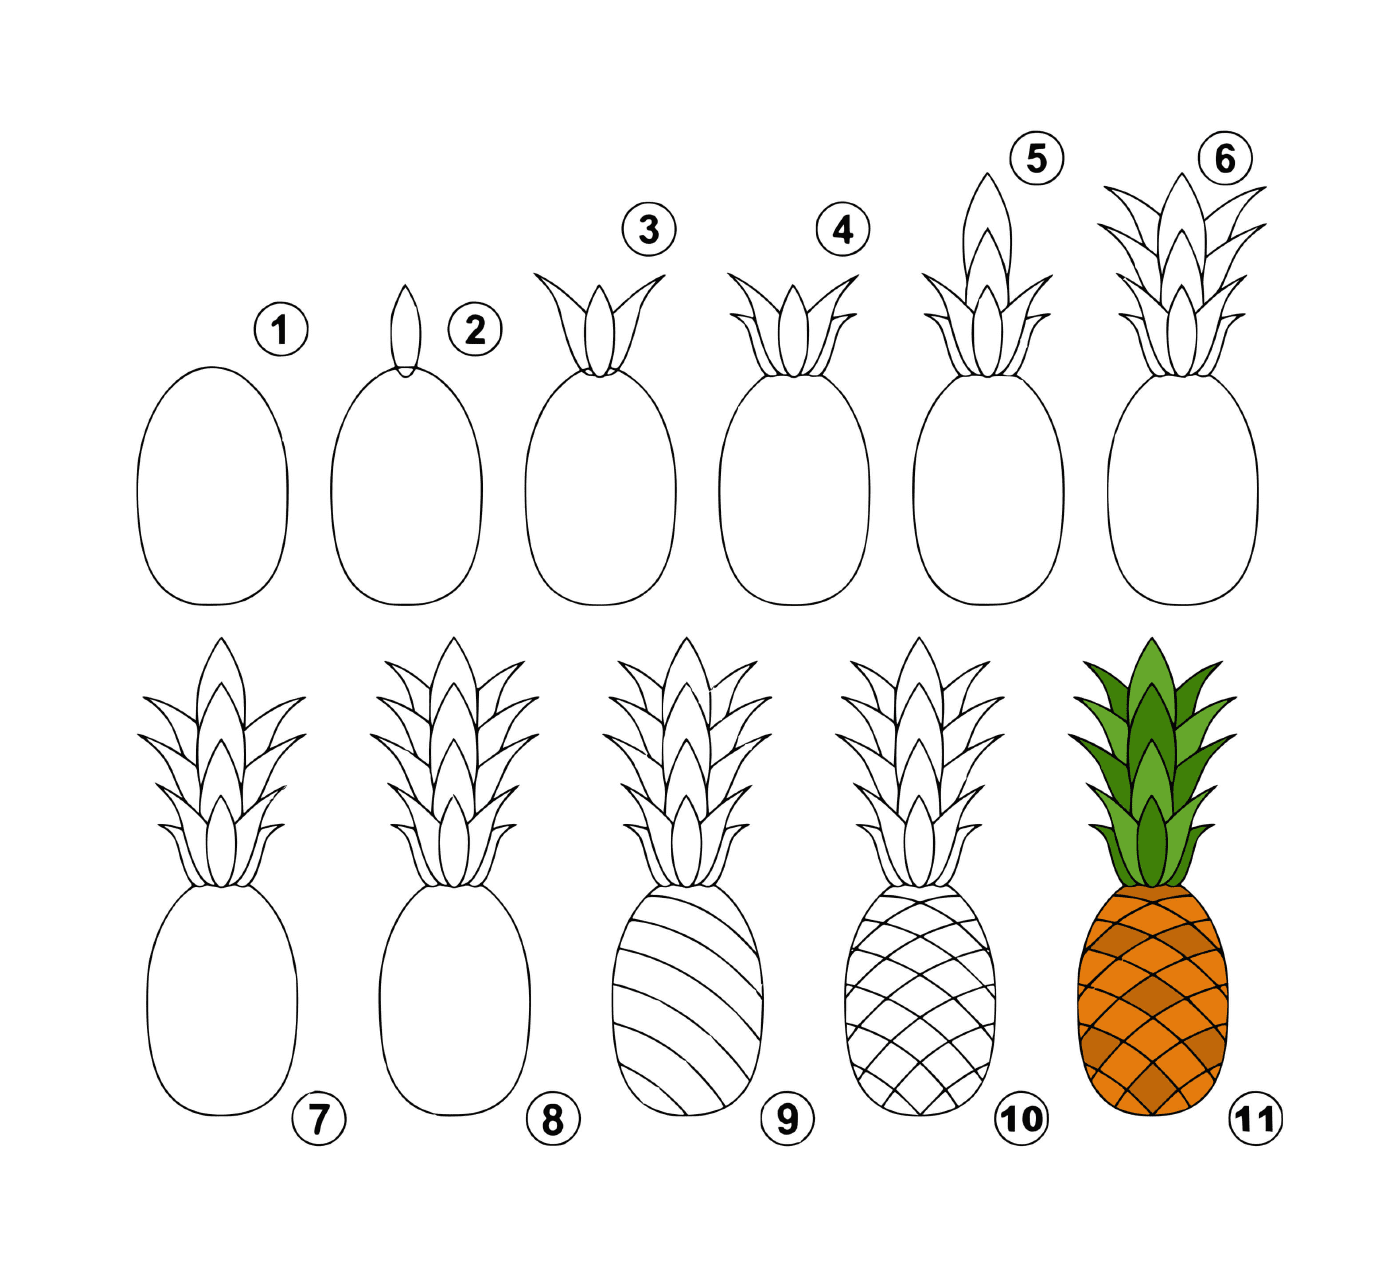   Comment dessiner une ananas facilement 